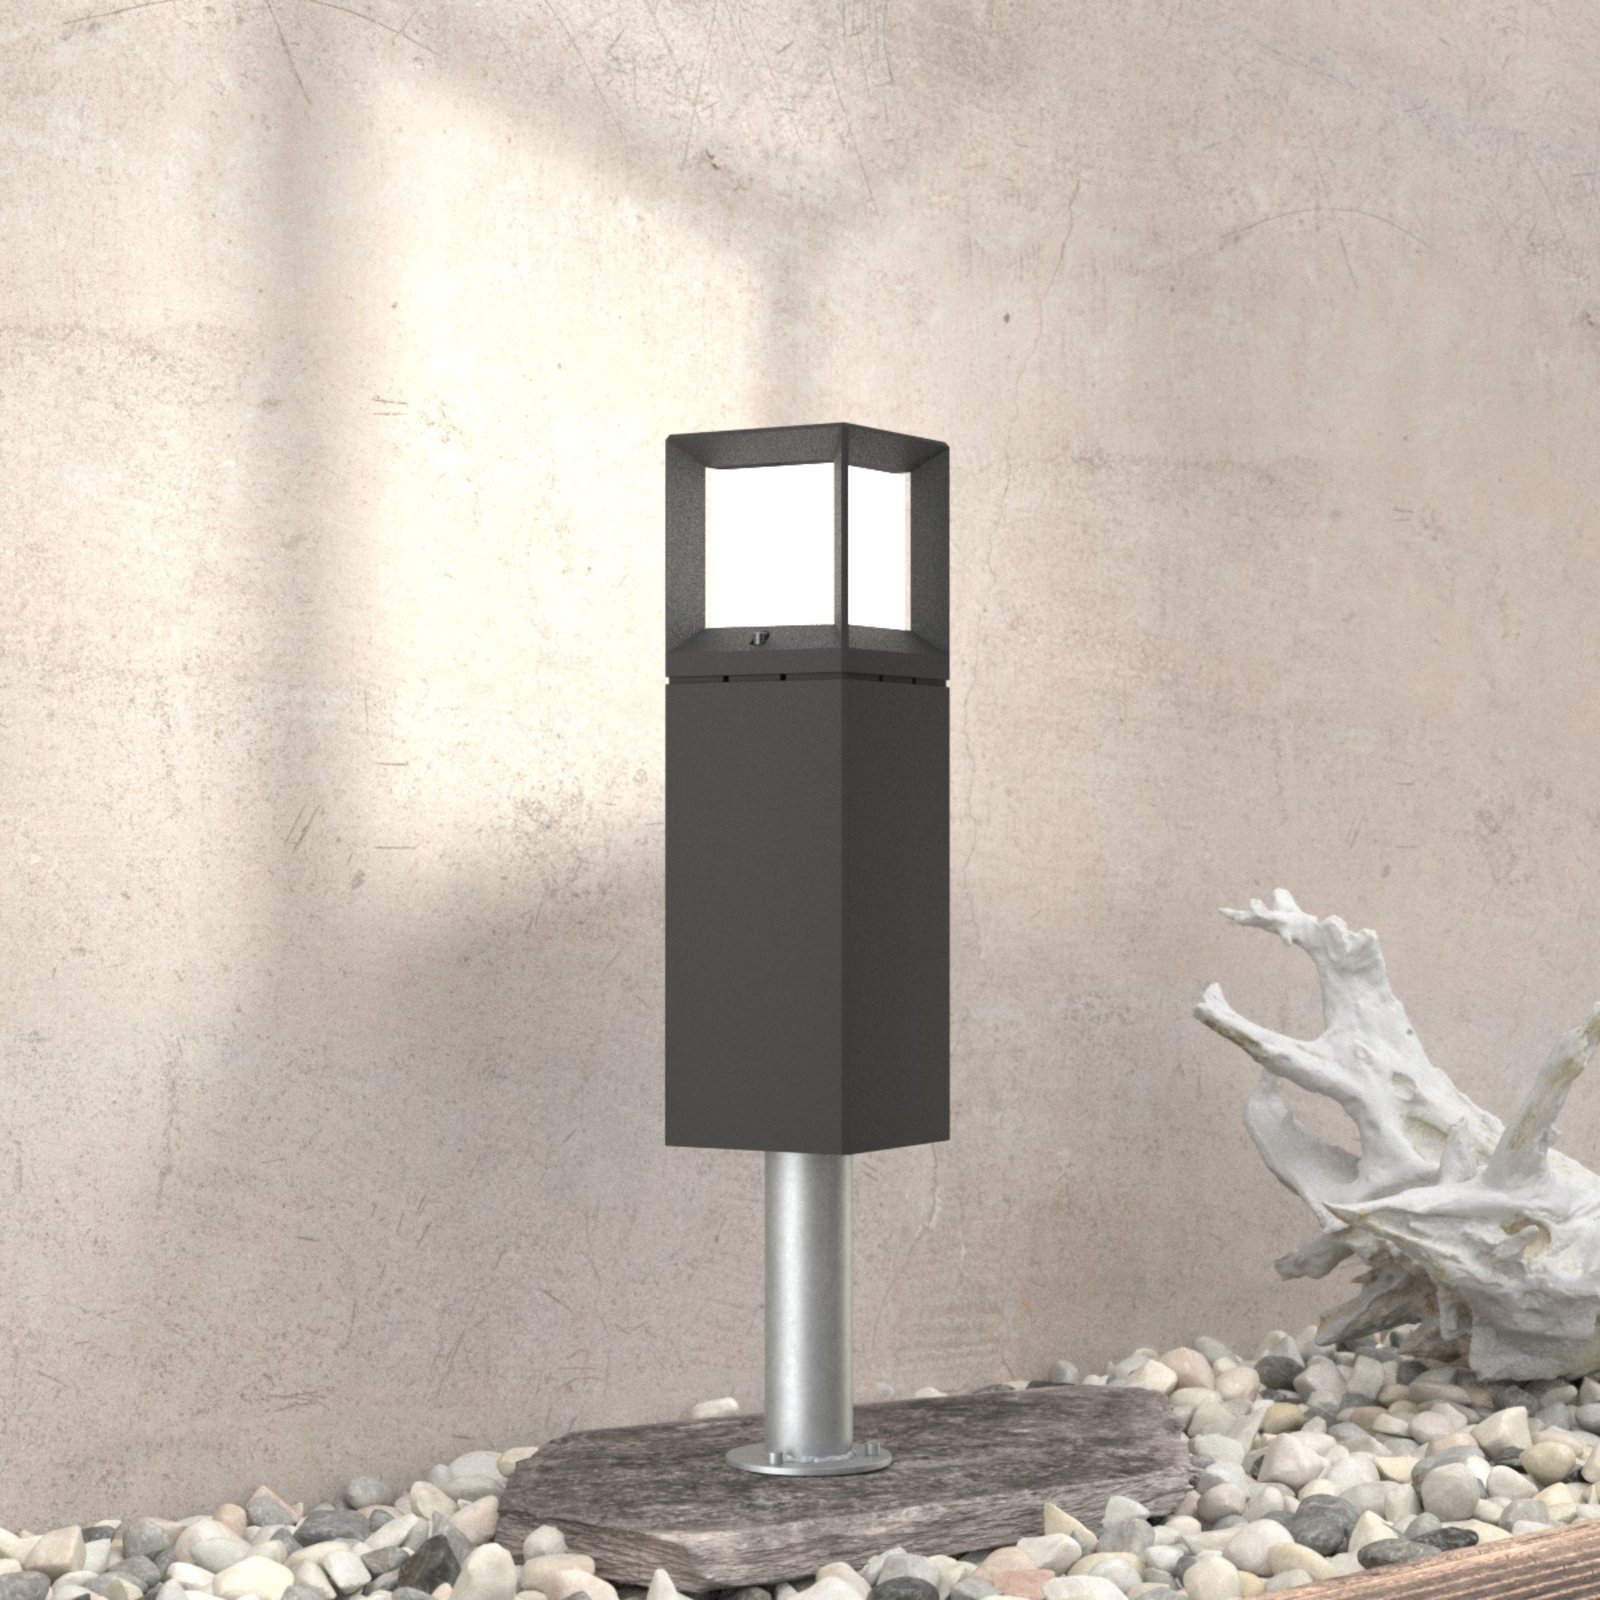 BEGA 84604 - LED pillar light in graphite, 3,000 K